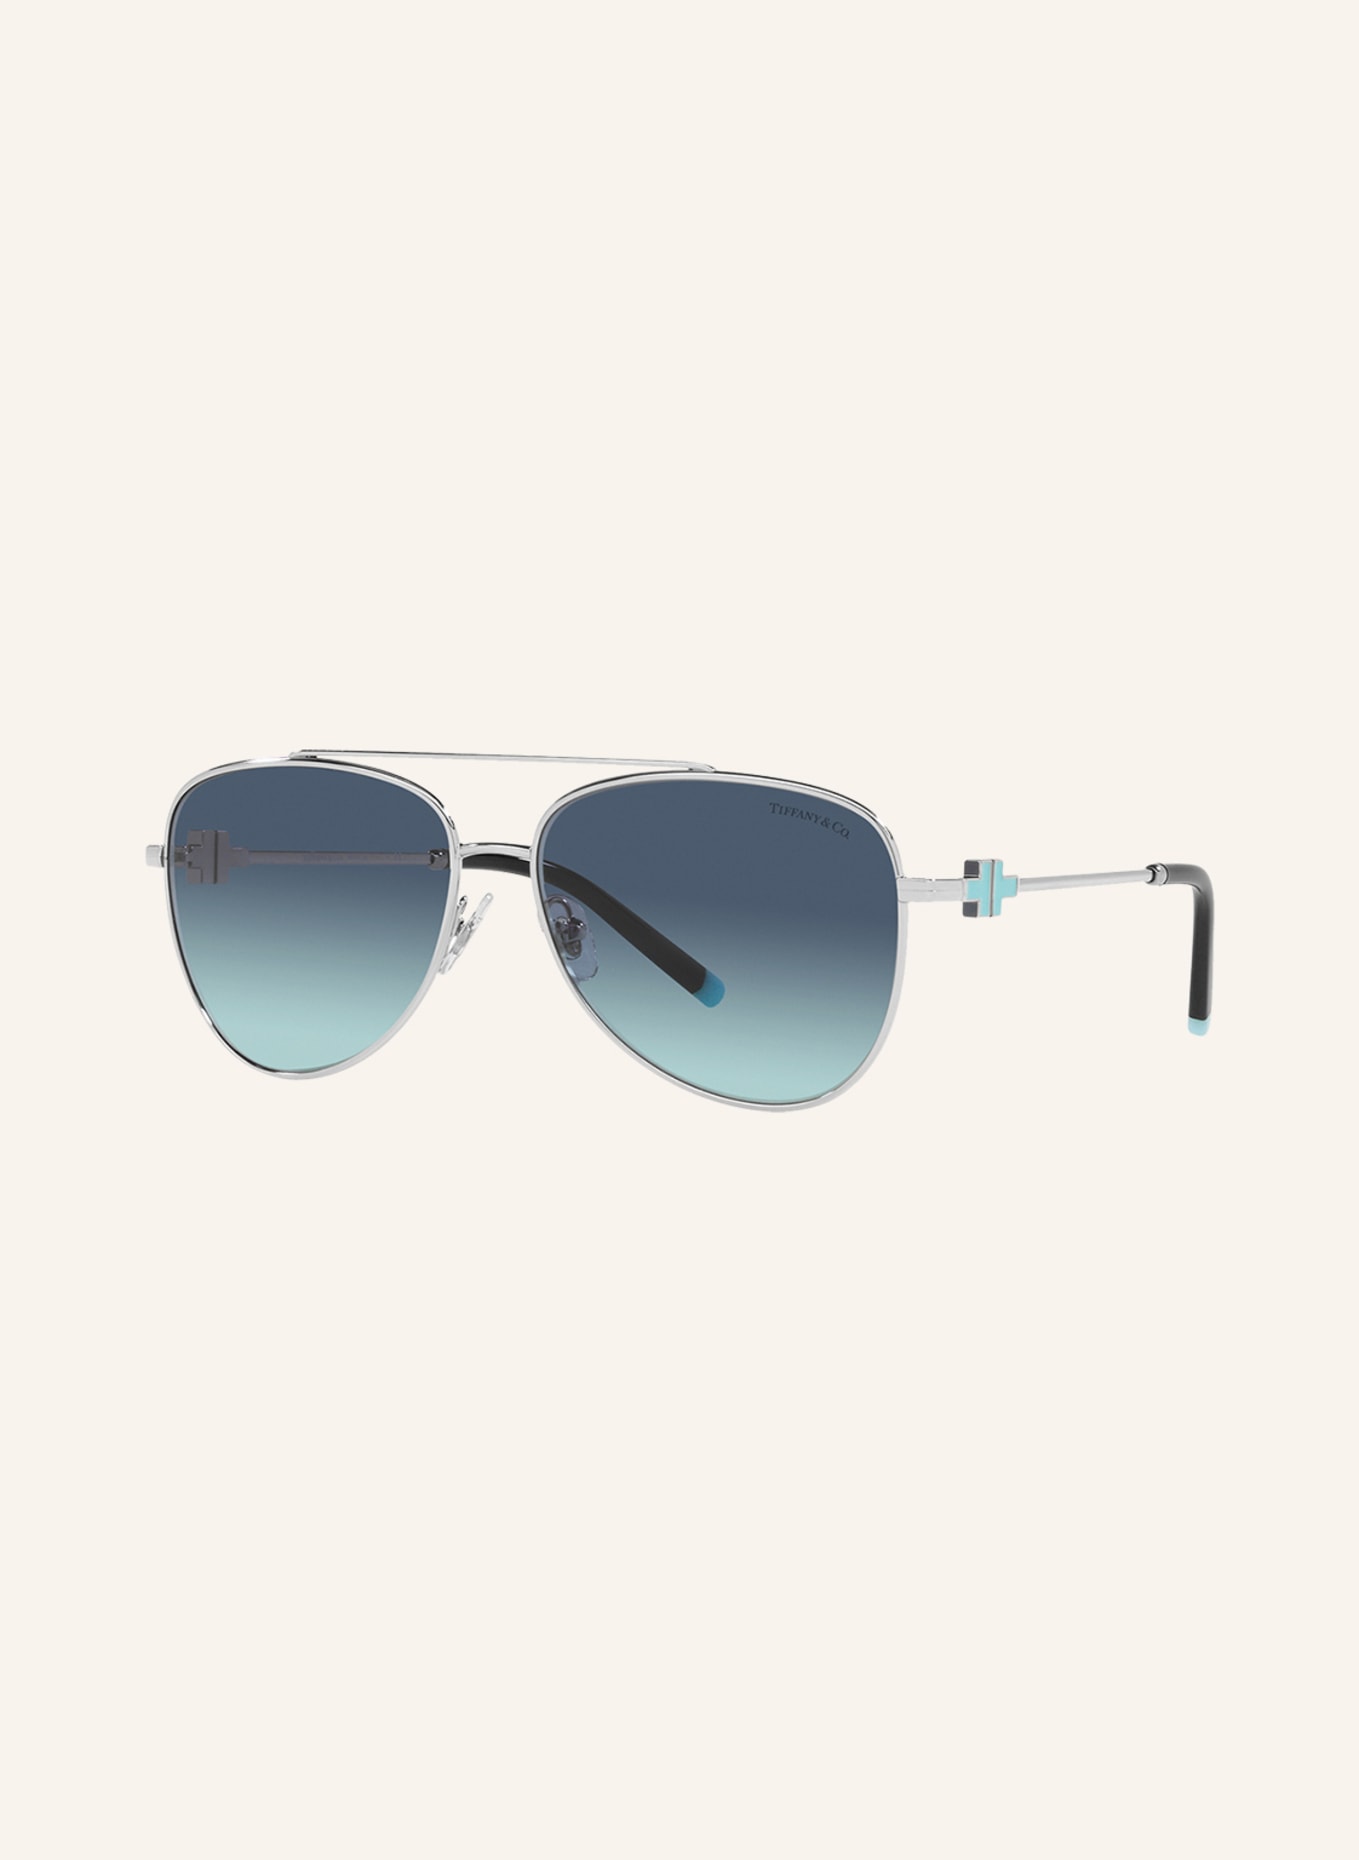 TIFFANY & Co. Sunglasses TF3080, Color: 60019S - SILVER/BLUE GRADIENT (Image 1)